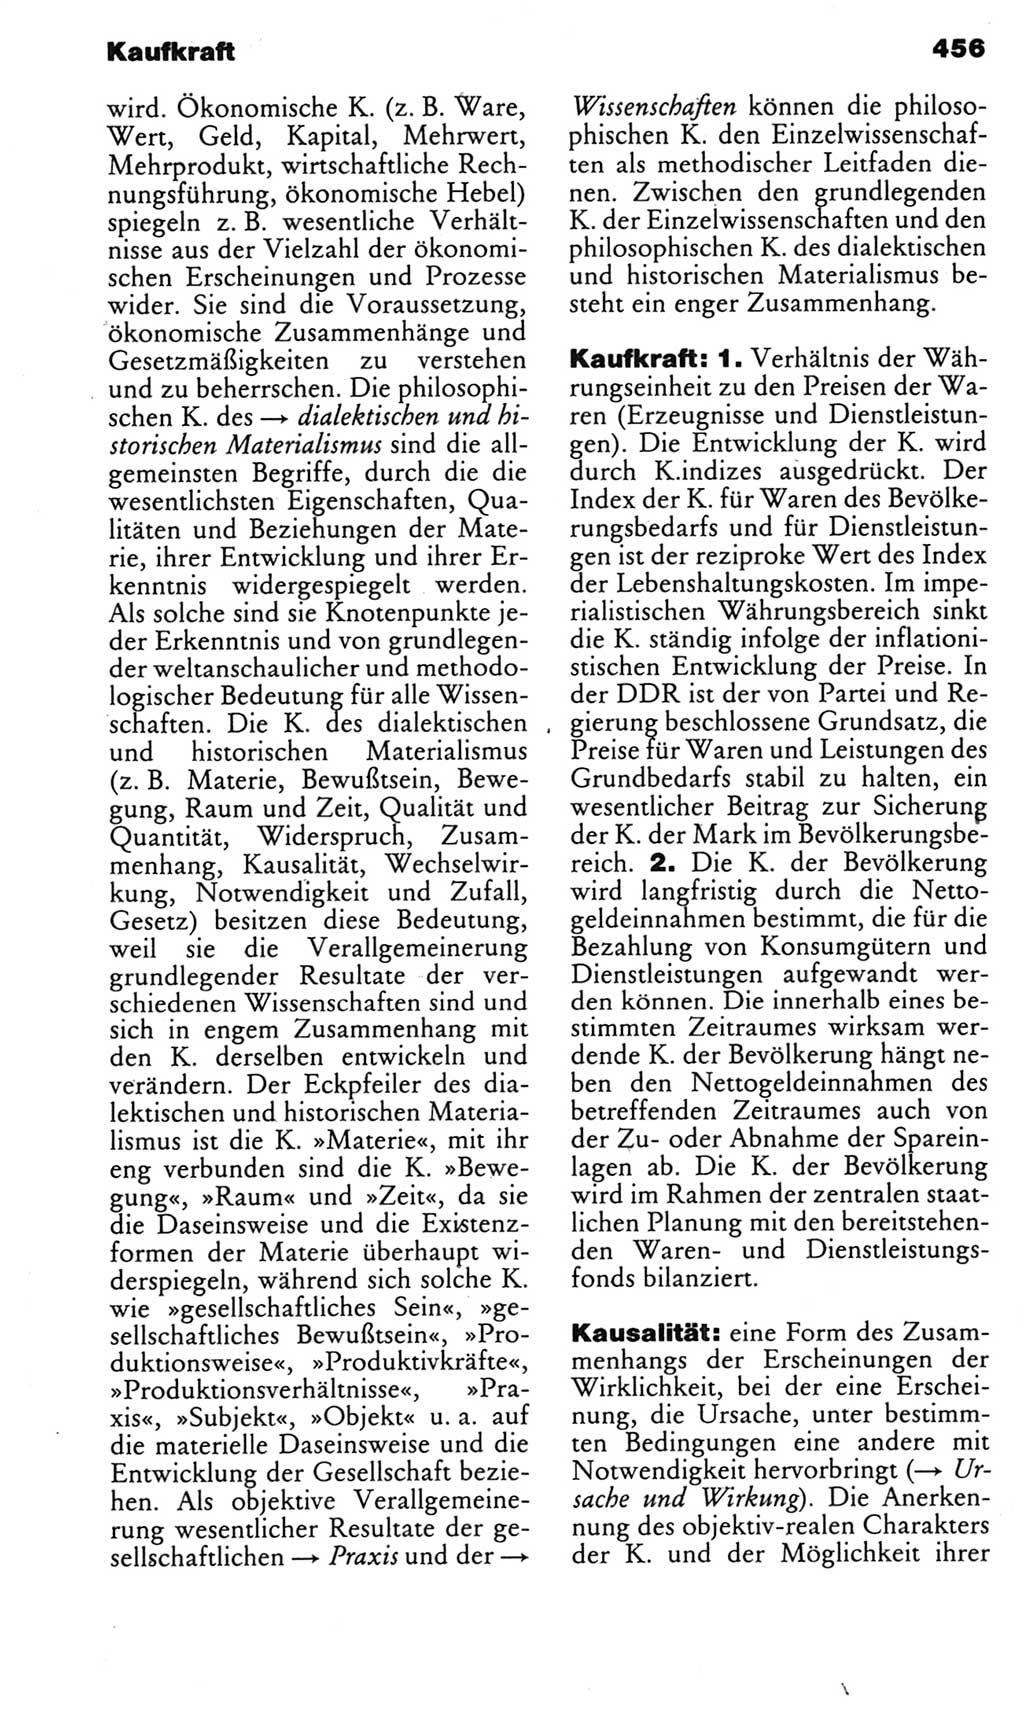 Kleines politisches Wörterbuch [Deutsche Demokratische Republik (DDR)] 1985, Seite 456 (Kl. pol. Wb. DDR 1985, S. 456)